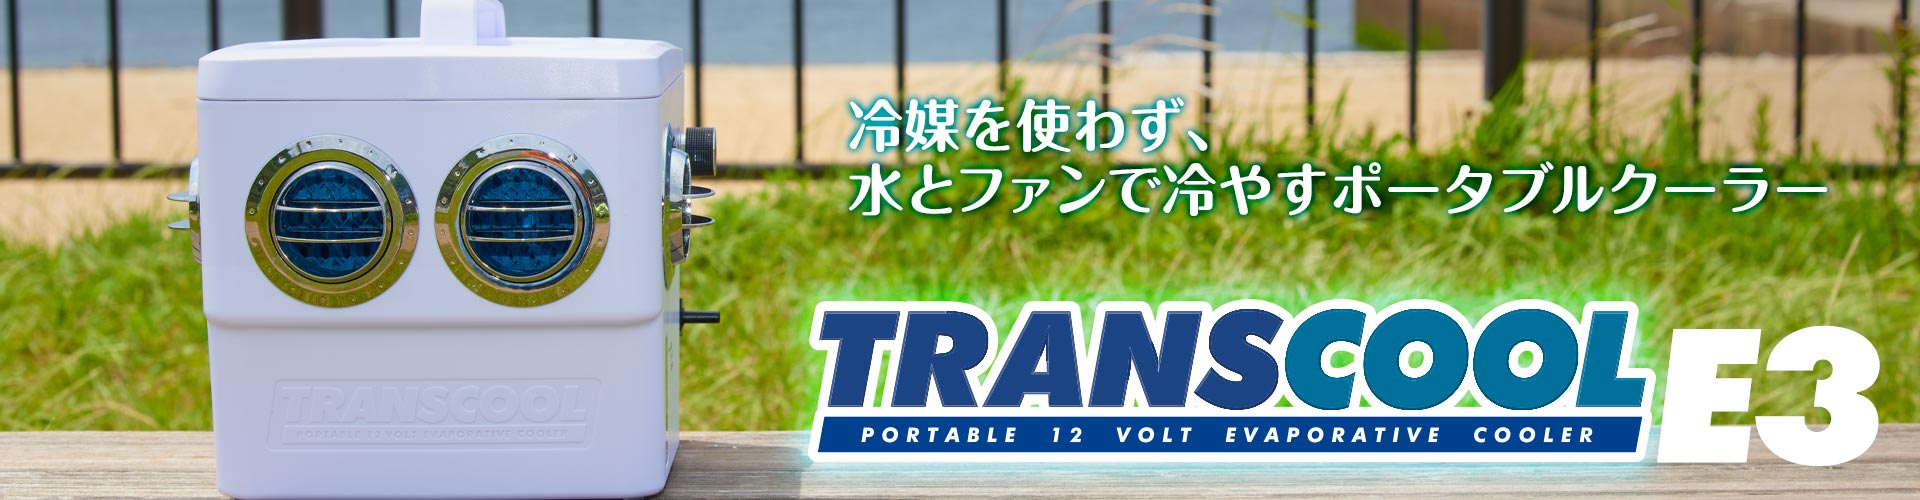 トランスクールE3 公式ページ 〜 karucan.jp 〜